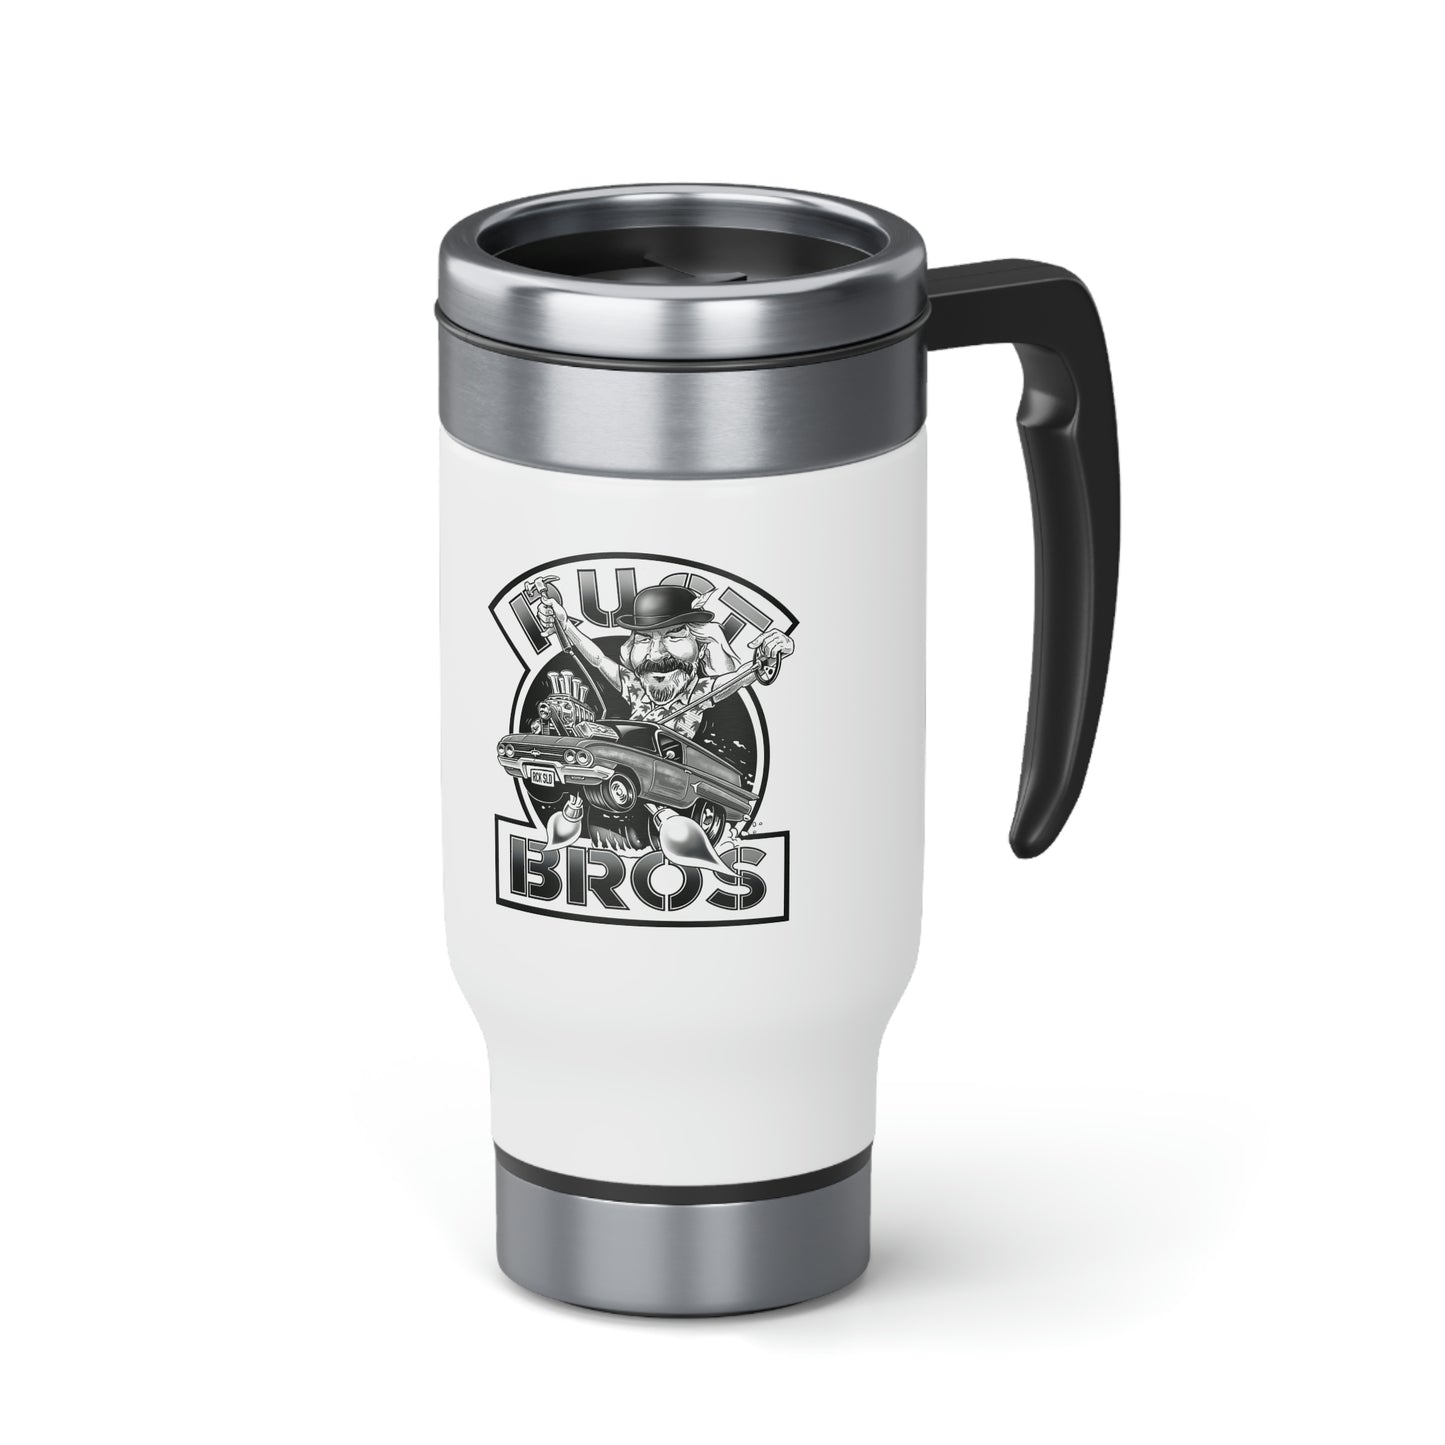 Rust Bros - Blair Smith Travel Mug with Handle, 14oz